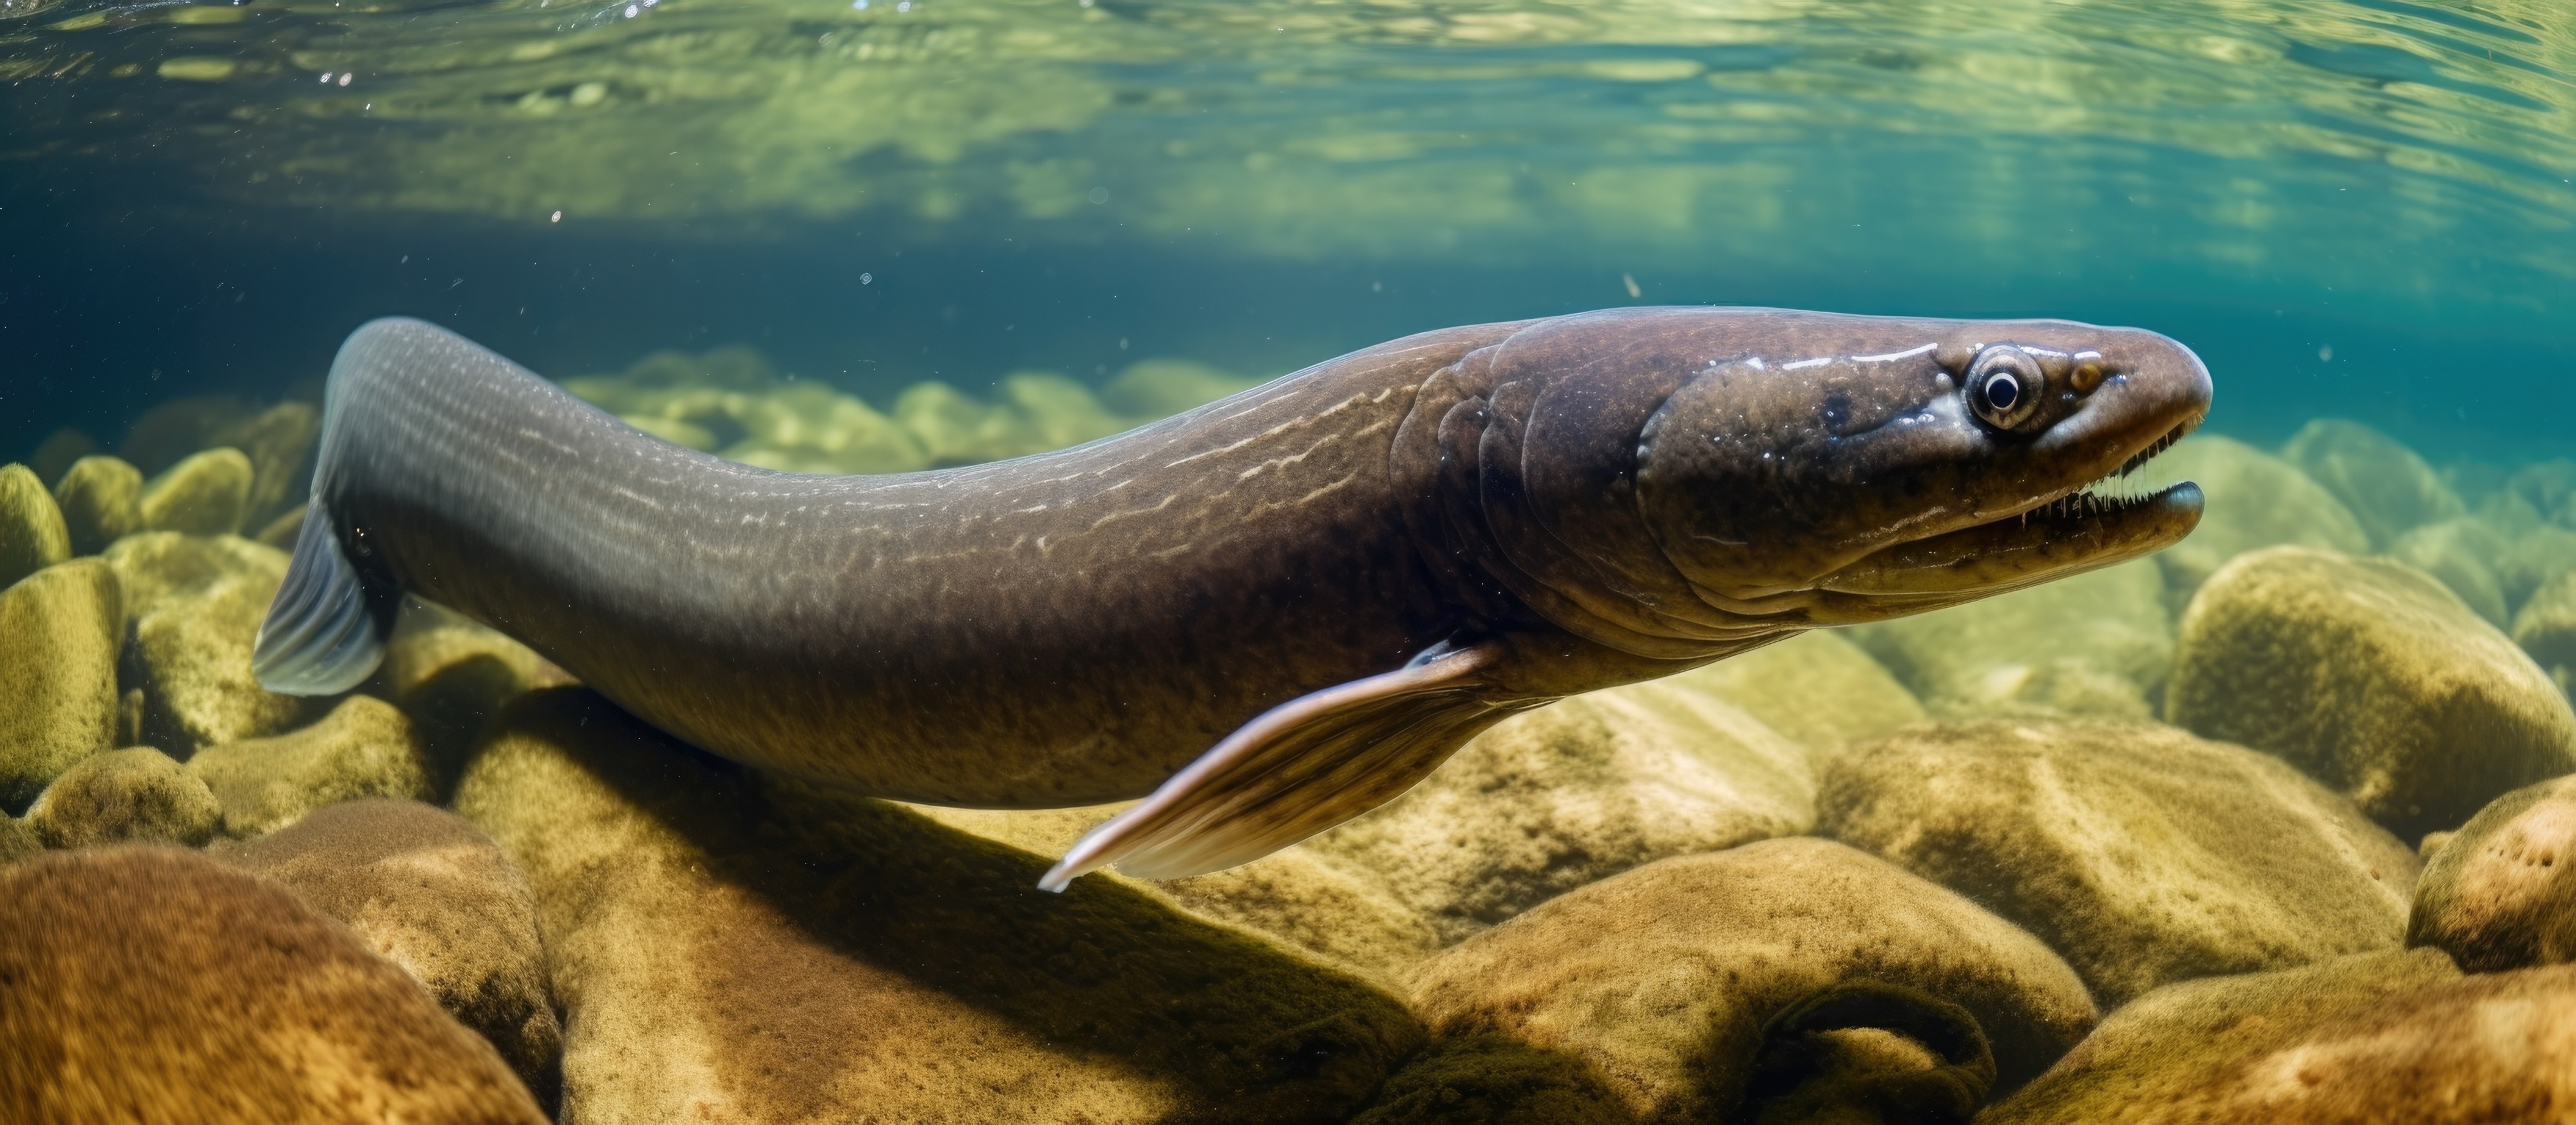 L’anguille européenne est l’une des plus impressionnantes espèces migratrices, parcourant près de 12 000 kilomètres entre l’océan et les fleuves au cours de son cycle de vie. © TheWaterMeloonProjec, Adobe Stock (illustration générée par IA)